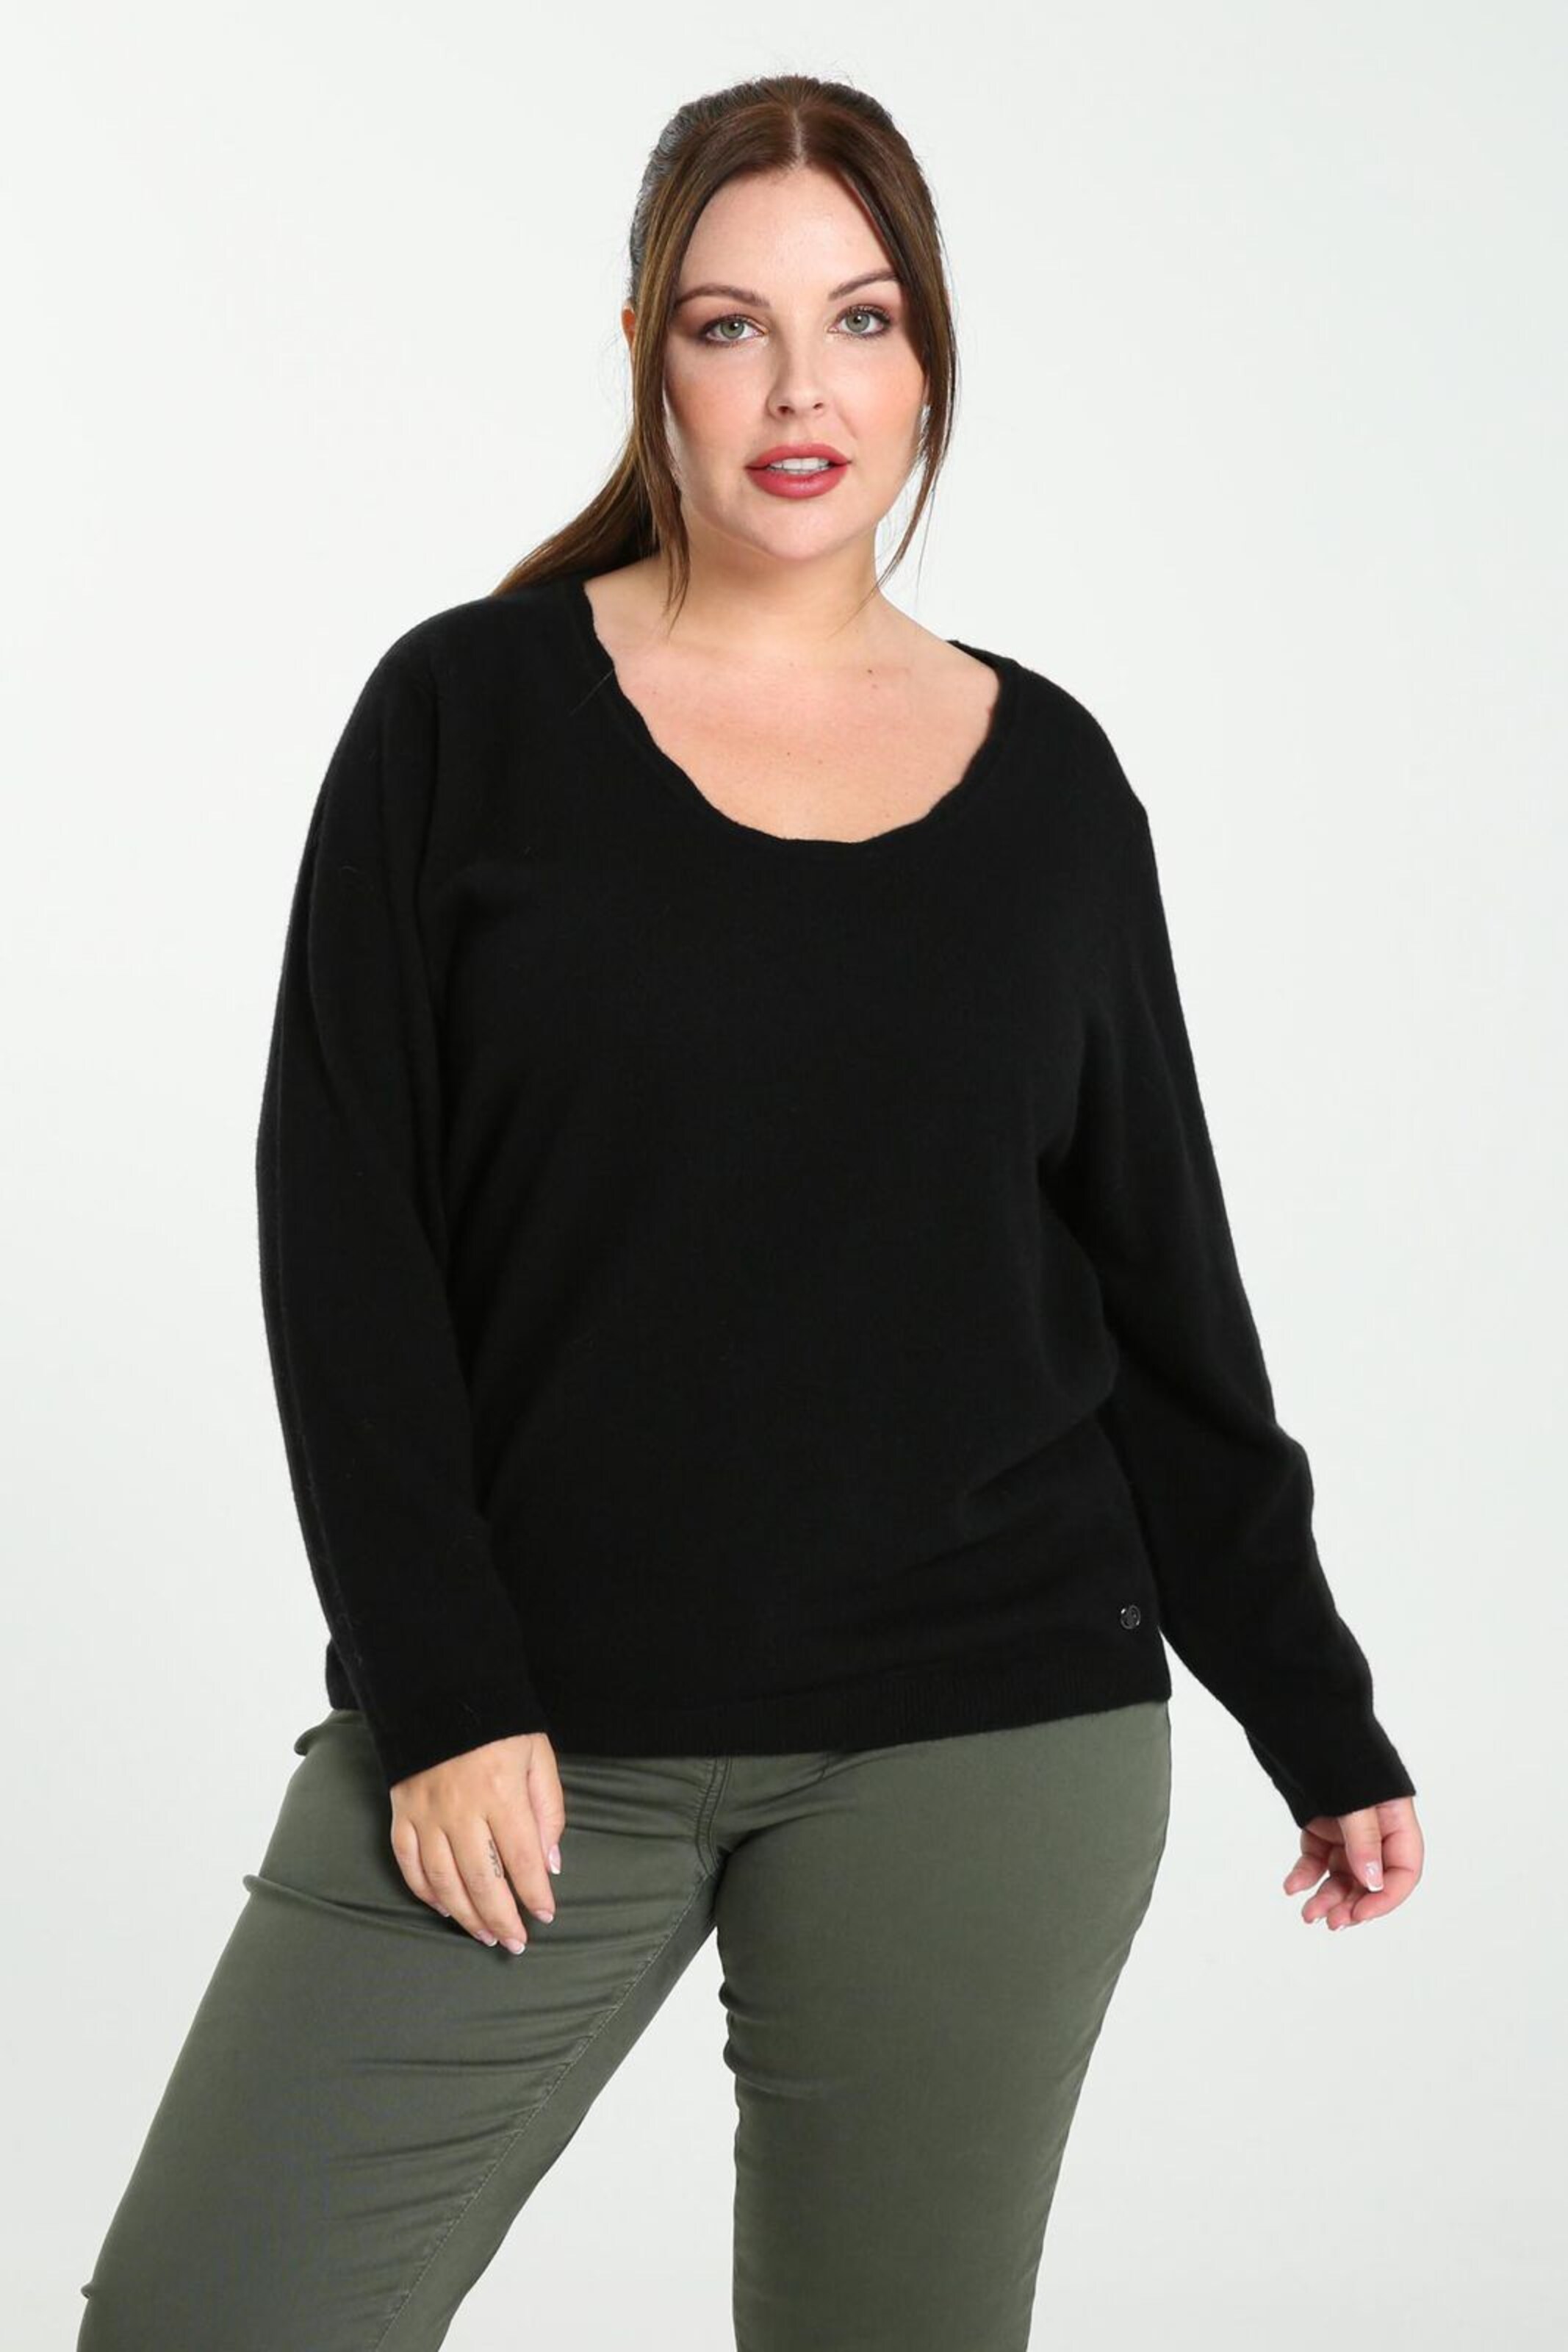 Frauen Große Größen Promiss Pullover in Schwarz - RH35603